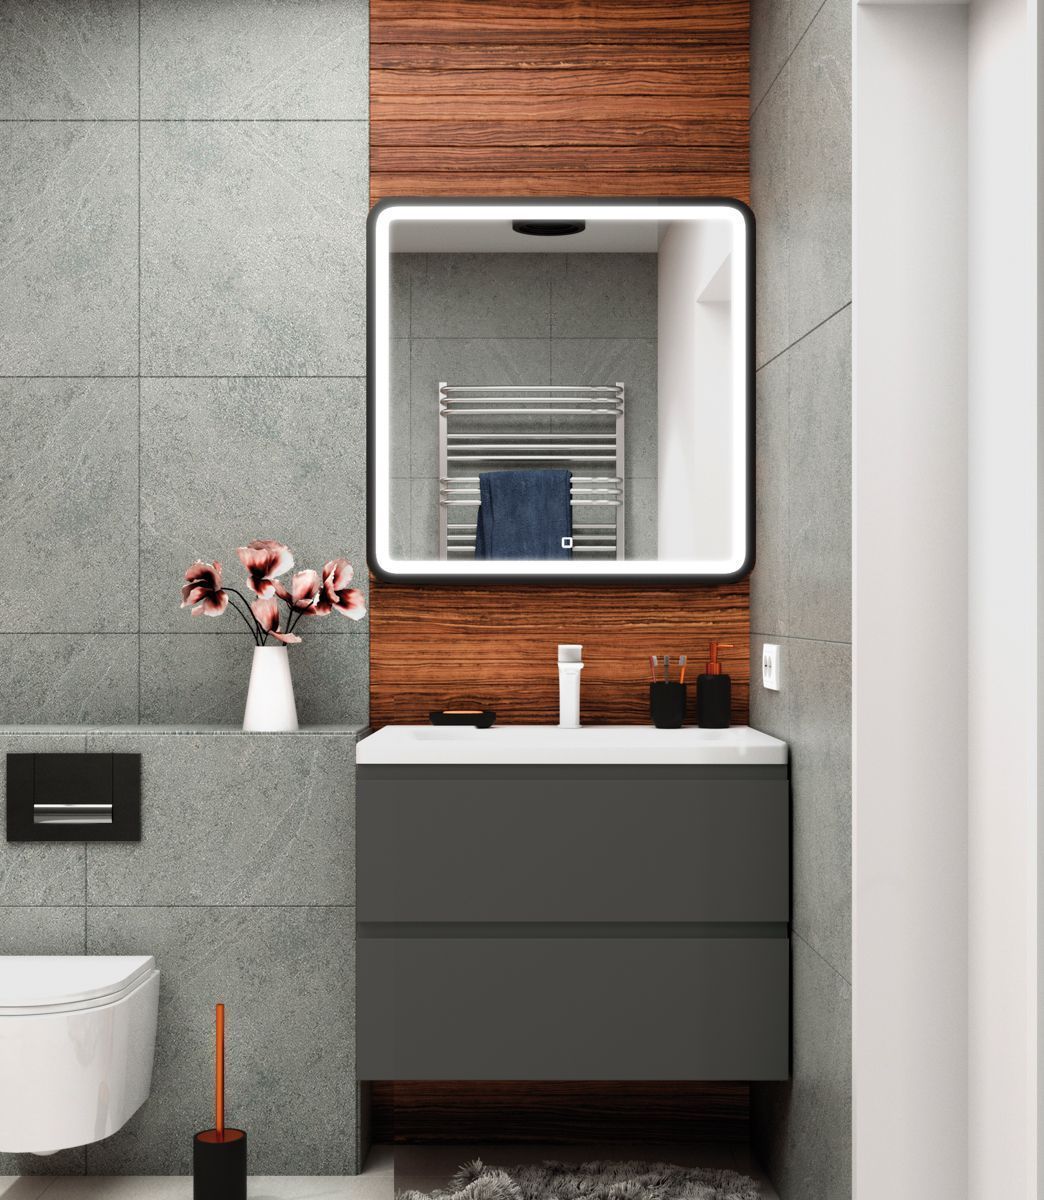 Мебель для ванной комнаты подвесная Art&Max BIANCHI 75 см Серый Матовый